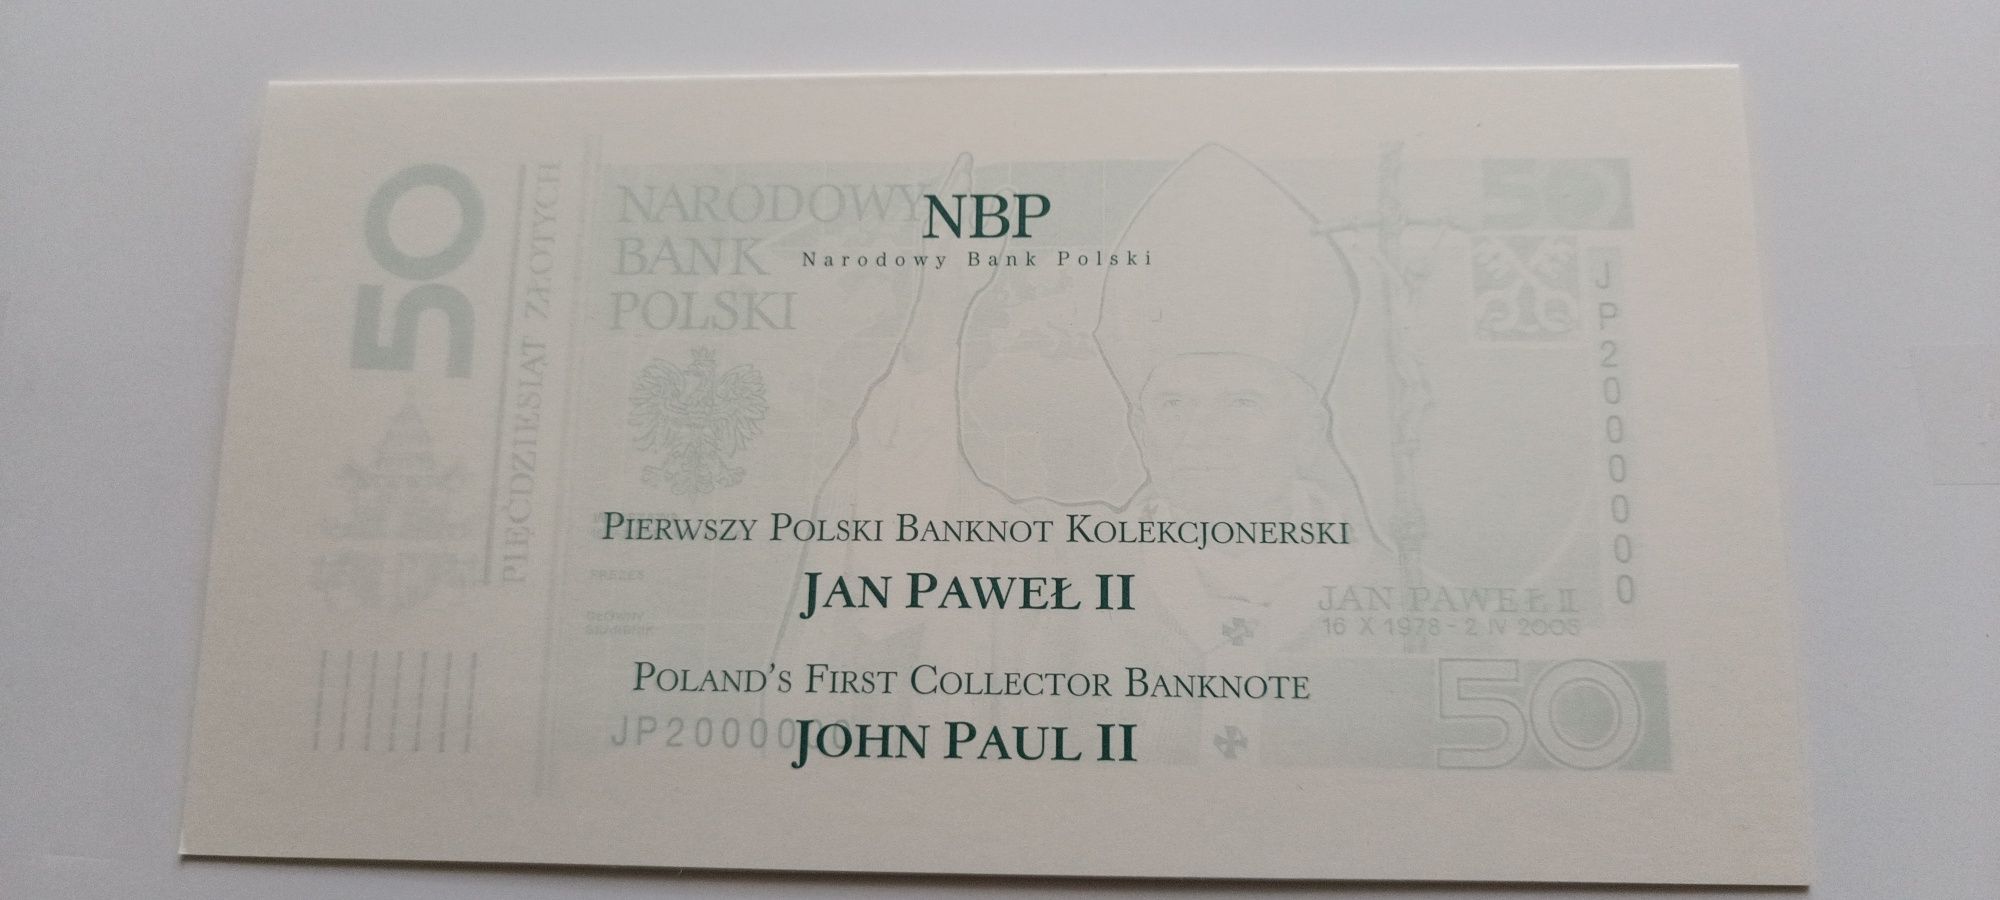 50 złotych 2006, Jan Paweł II UNC